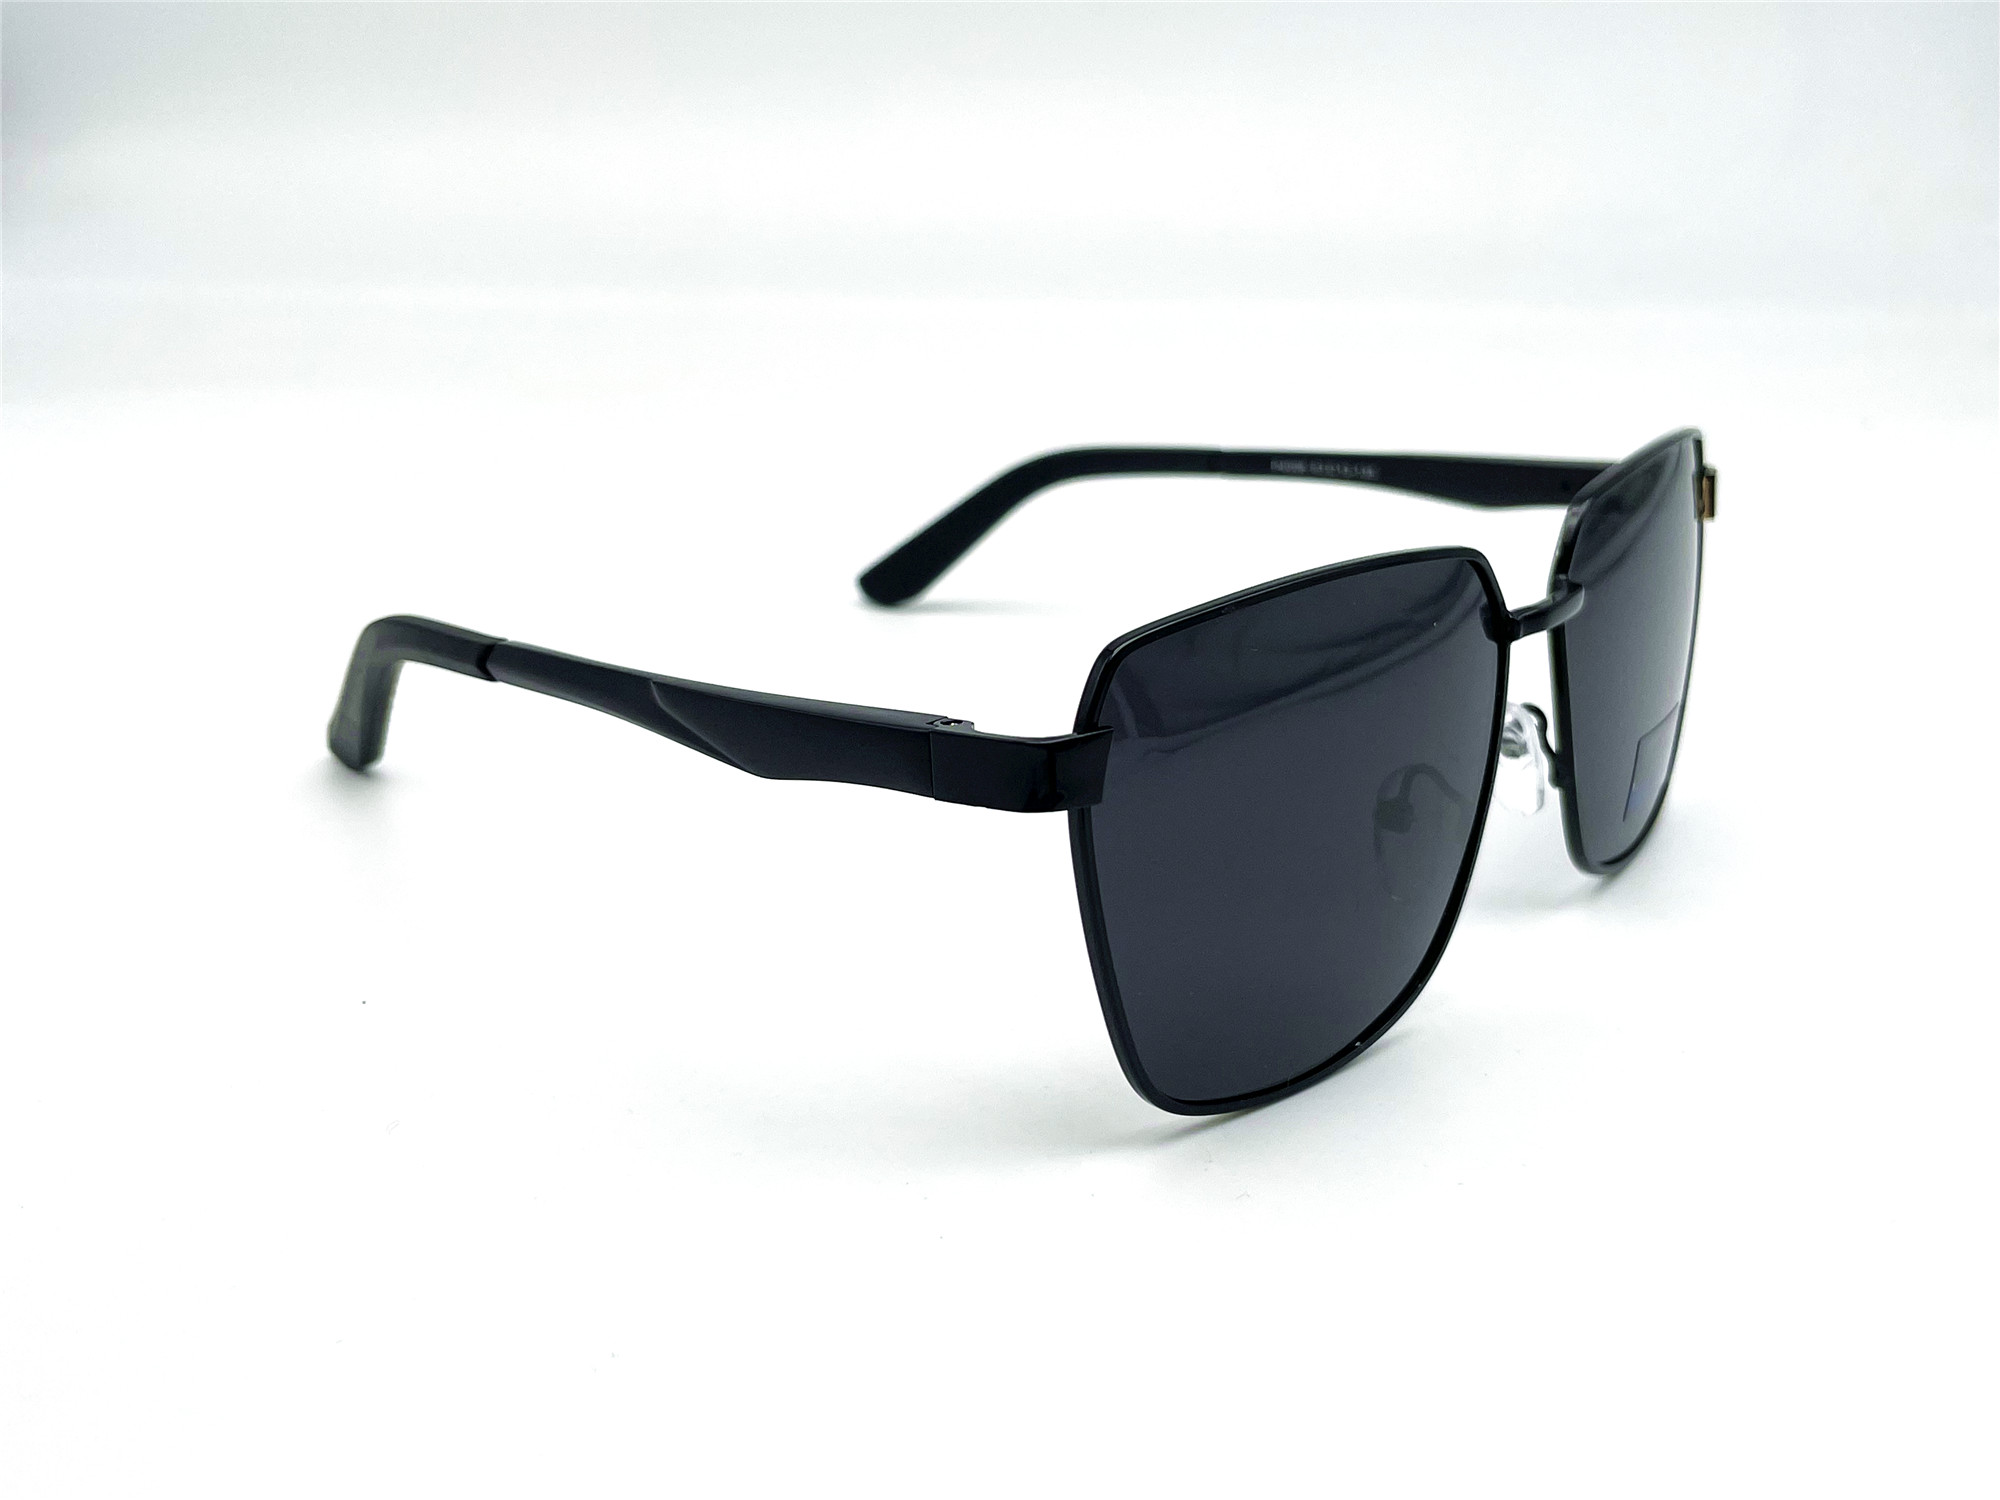  Солнцезащитные очки картинка Мужские Caipai Polarized Квадратные P4006-С1 